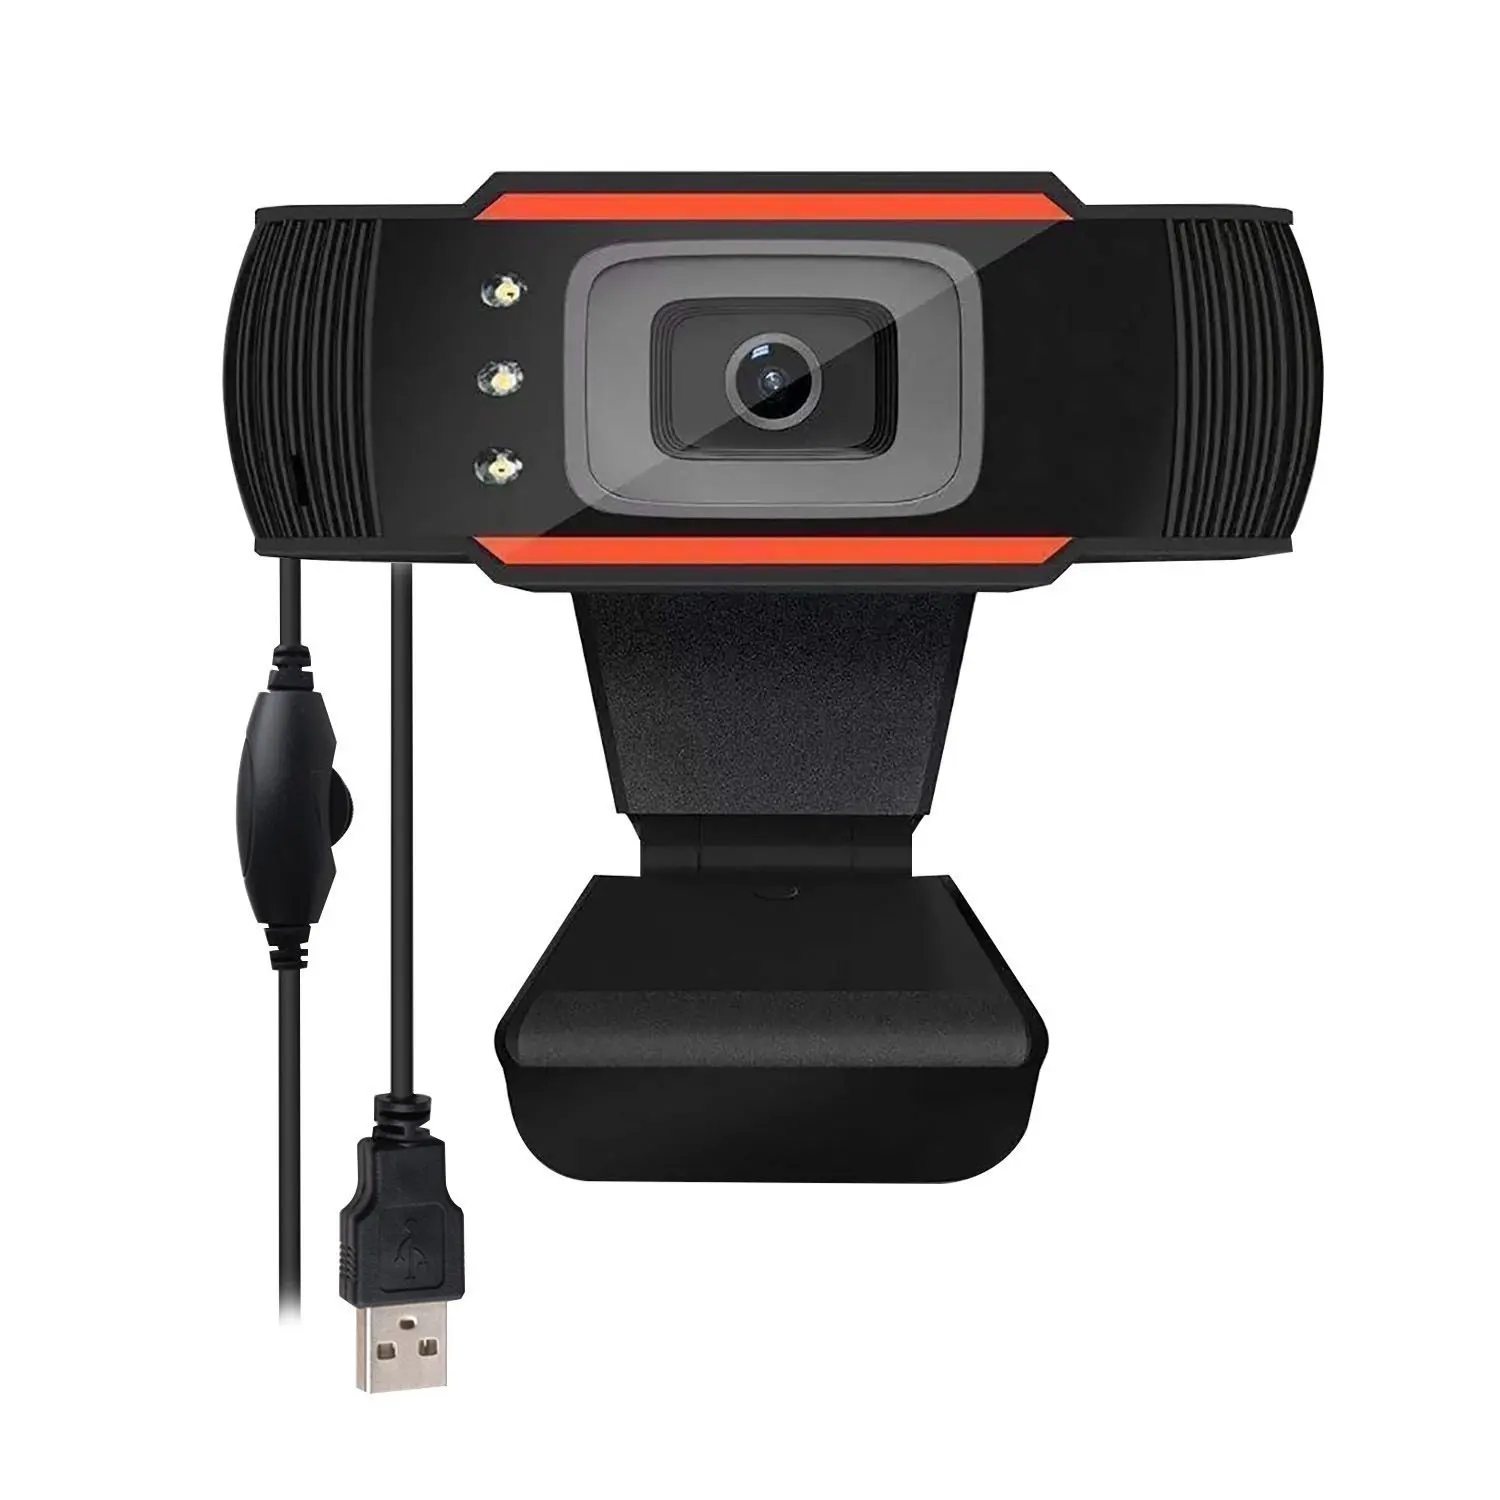 Web câmera cam 480p 720p 1080p full hd 1920 câmeras de videoconferência ao vivo para pc laptop câmeras de vídeo web webcam